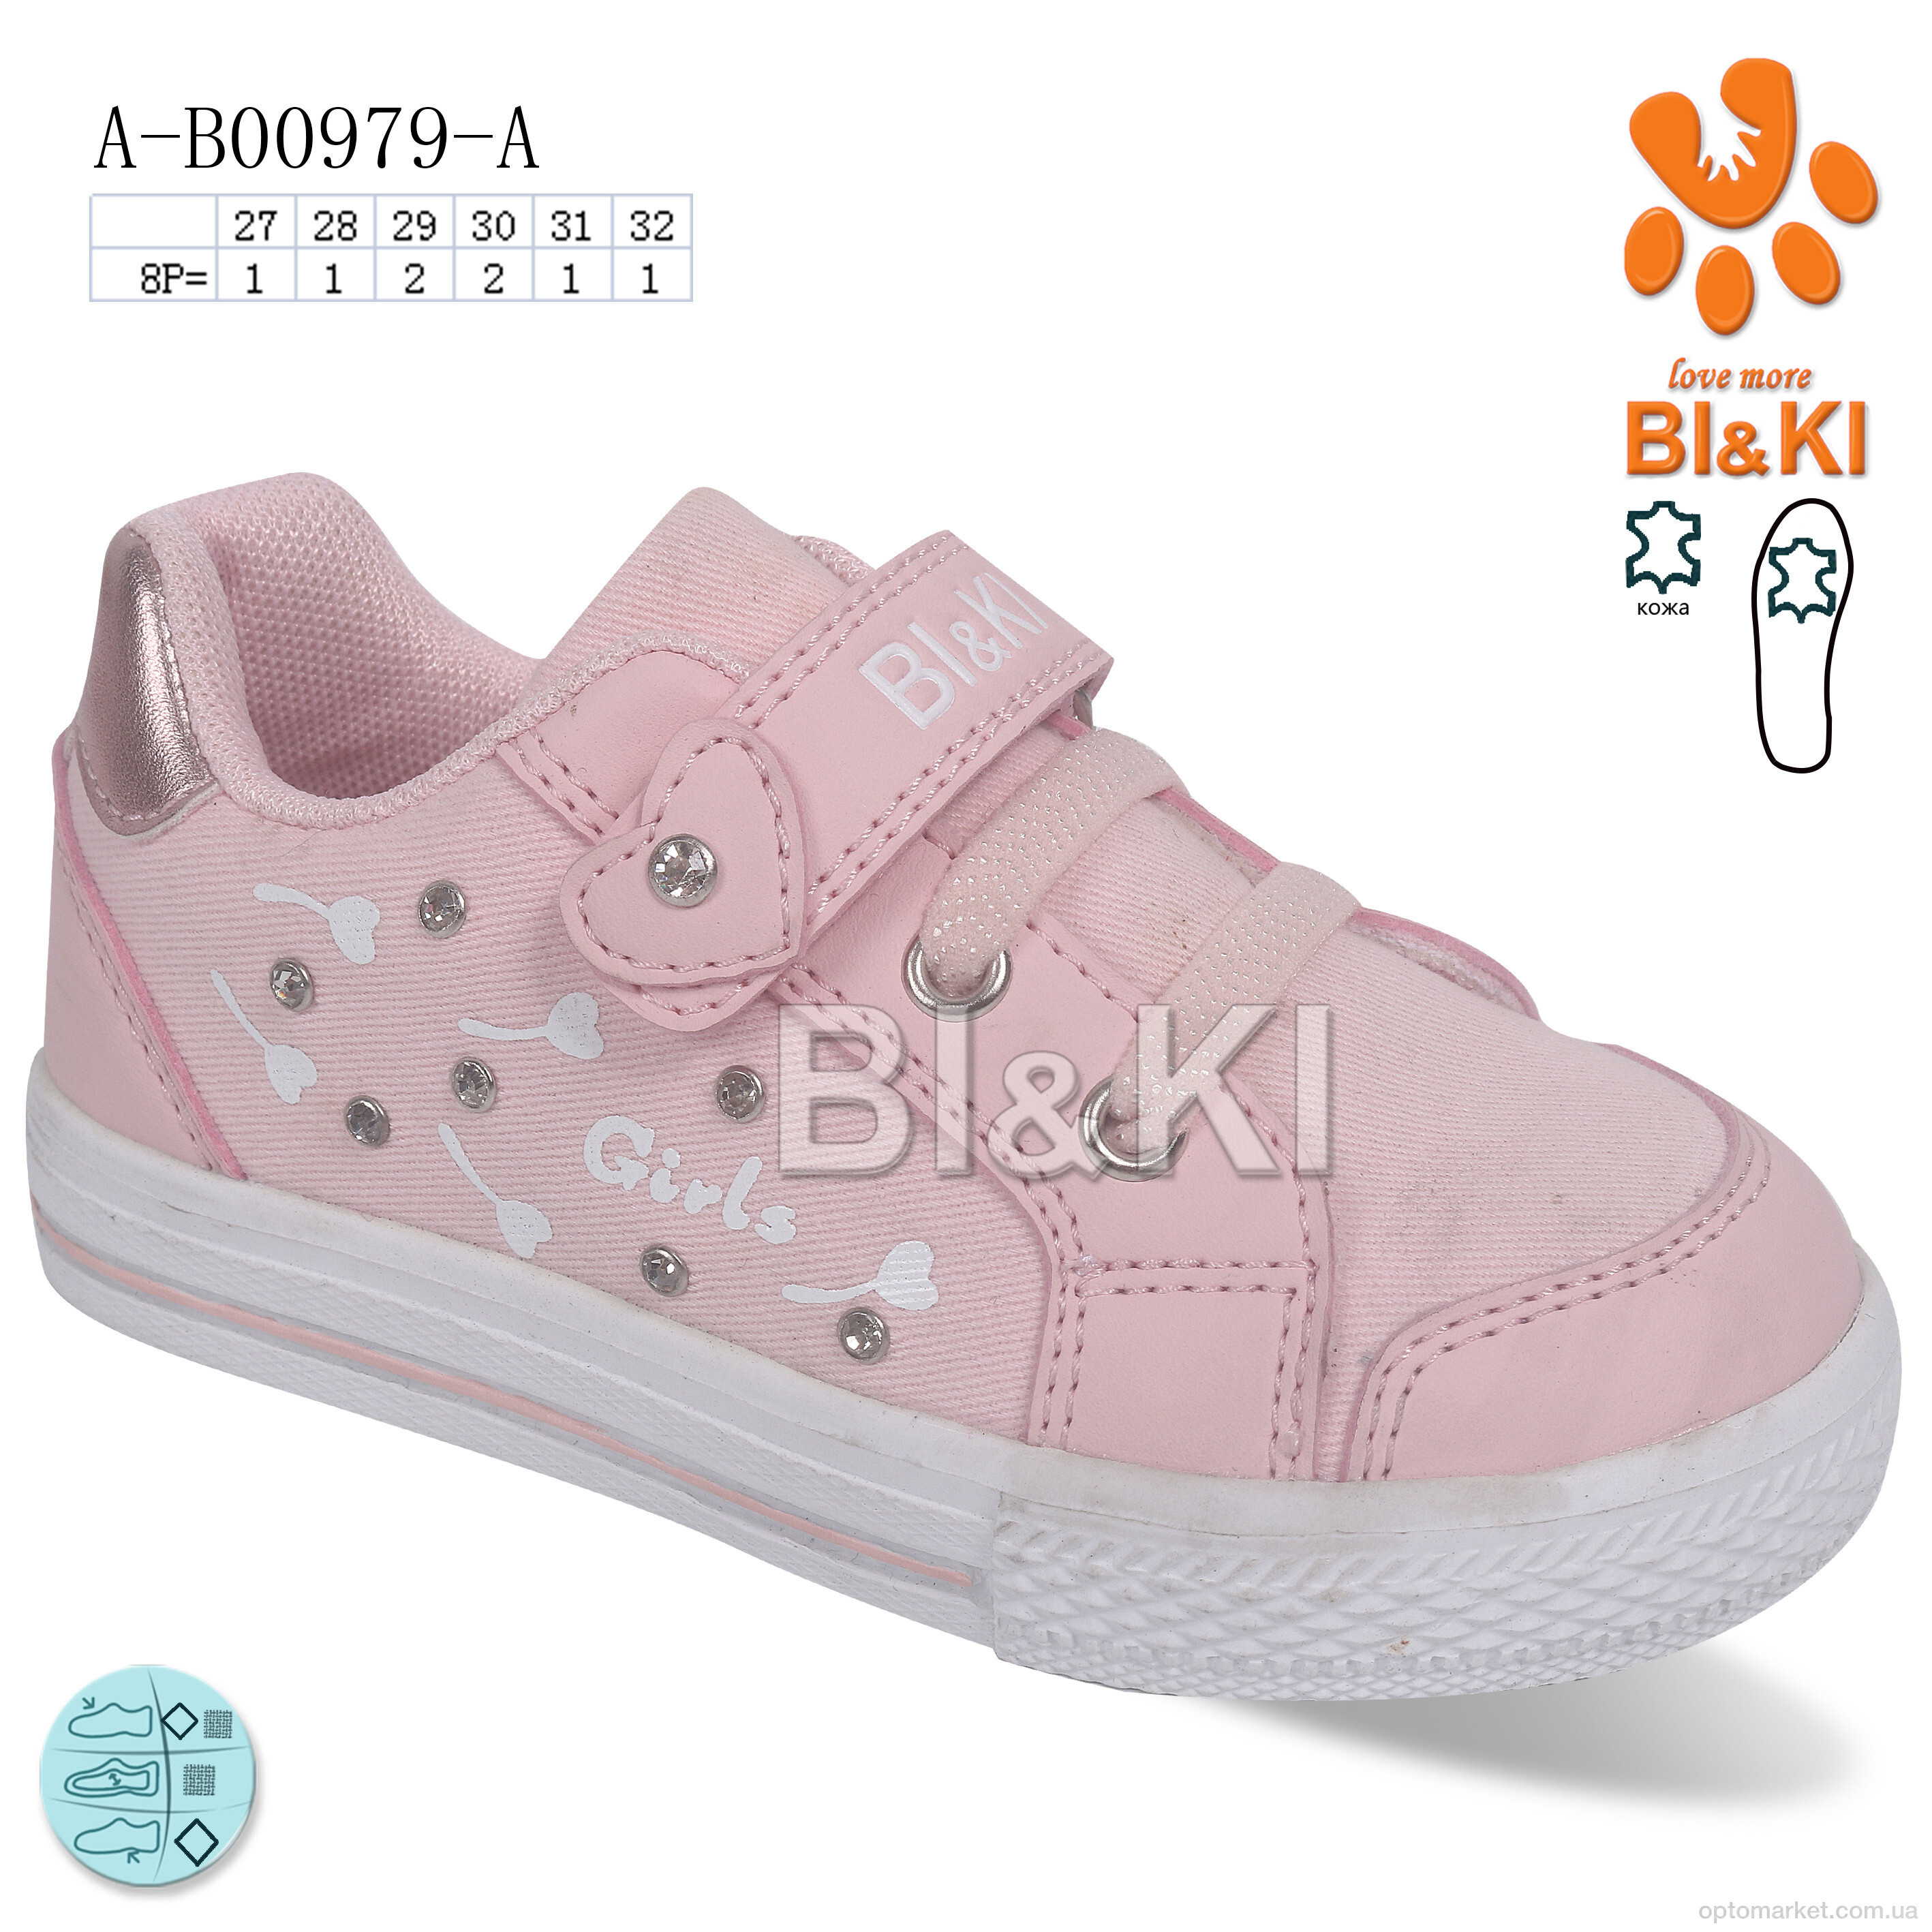 Купить Кросівки дитячі A-B00979-A Bi&Ki рожевий, фото 1